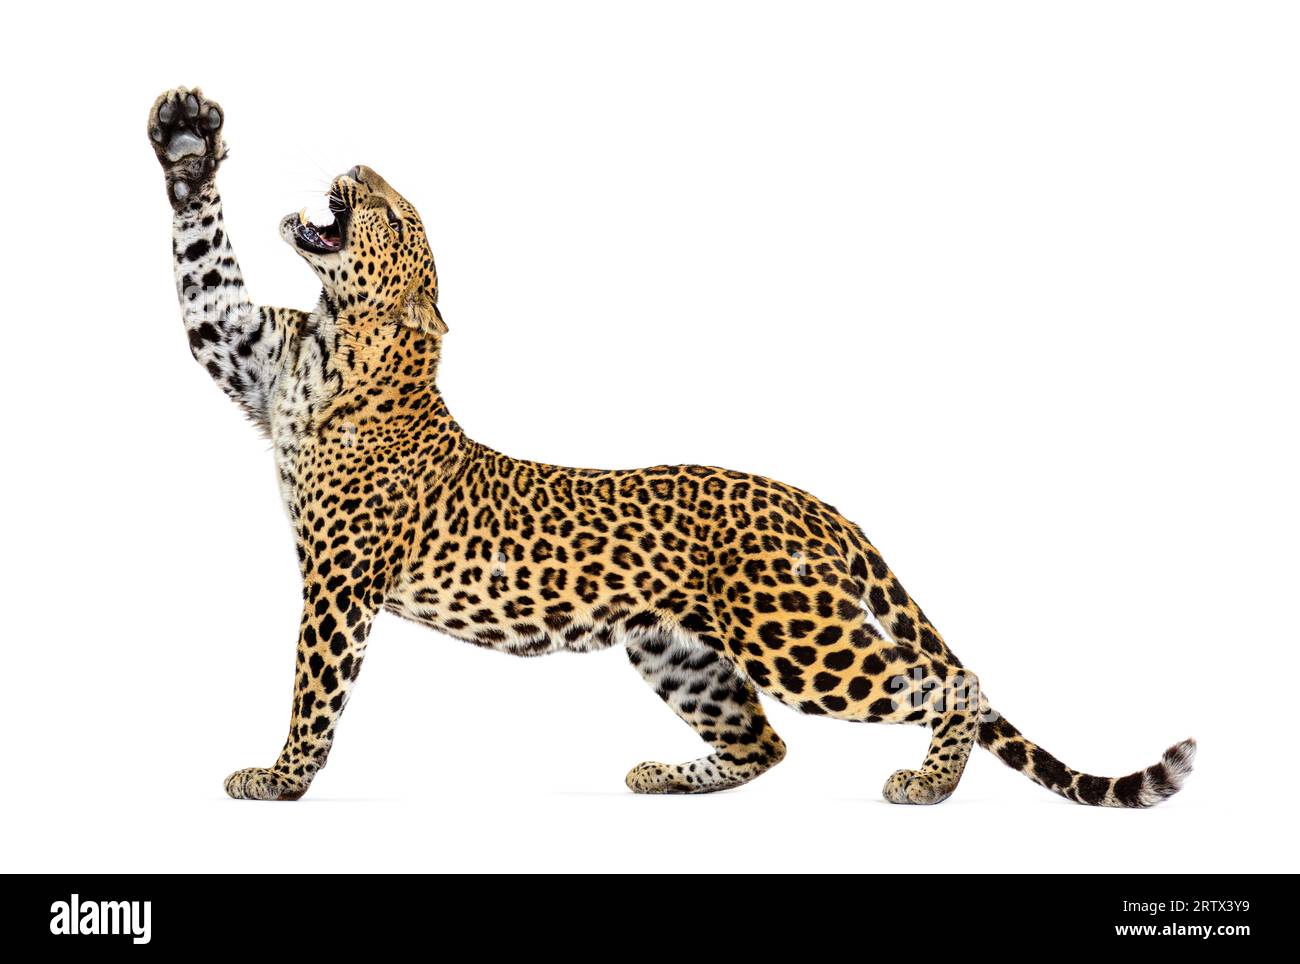 Seitenansicht eines Leoparden, der seine Pfoten nach oben streckt, der Mund offen zeigt seine Zähne, Panthera pardus, isoliert auf weiß Stockfoto